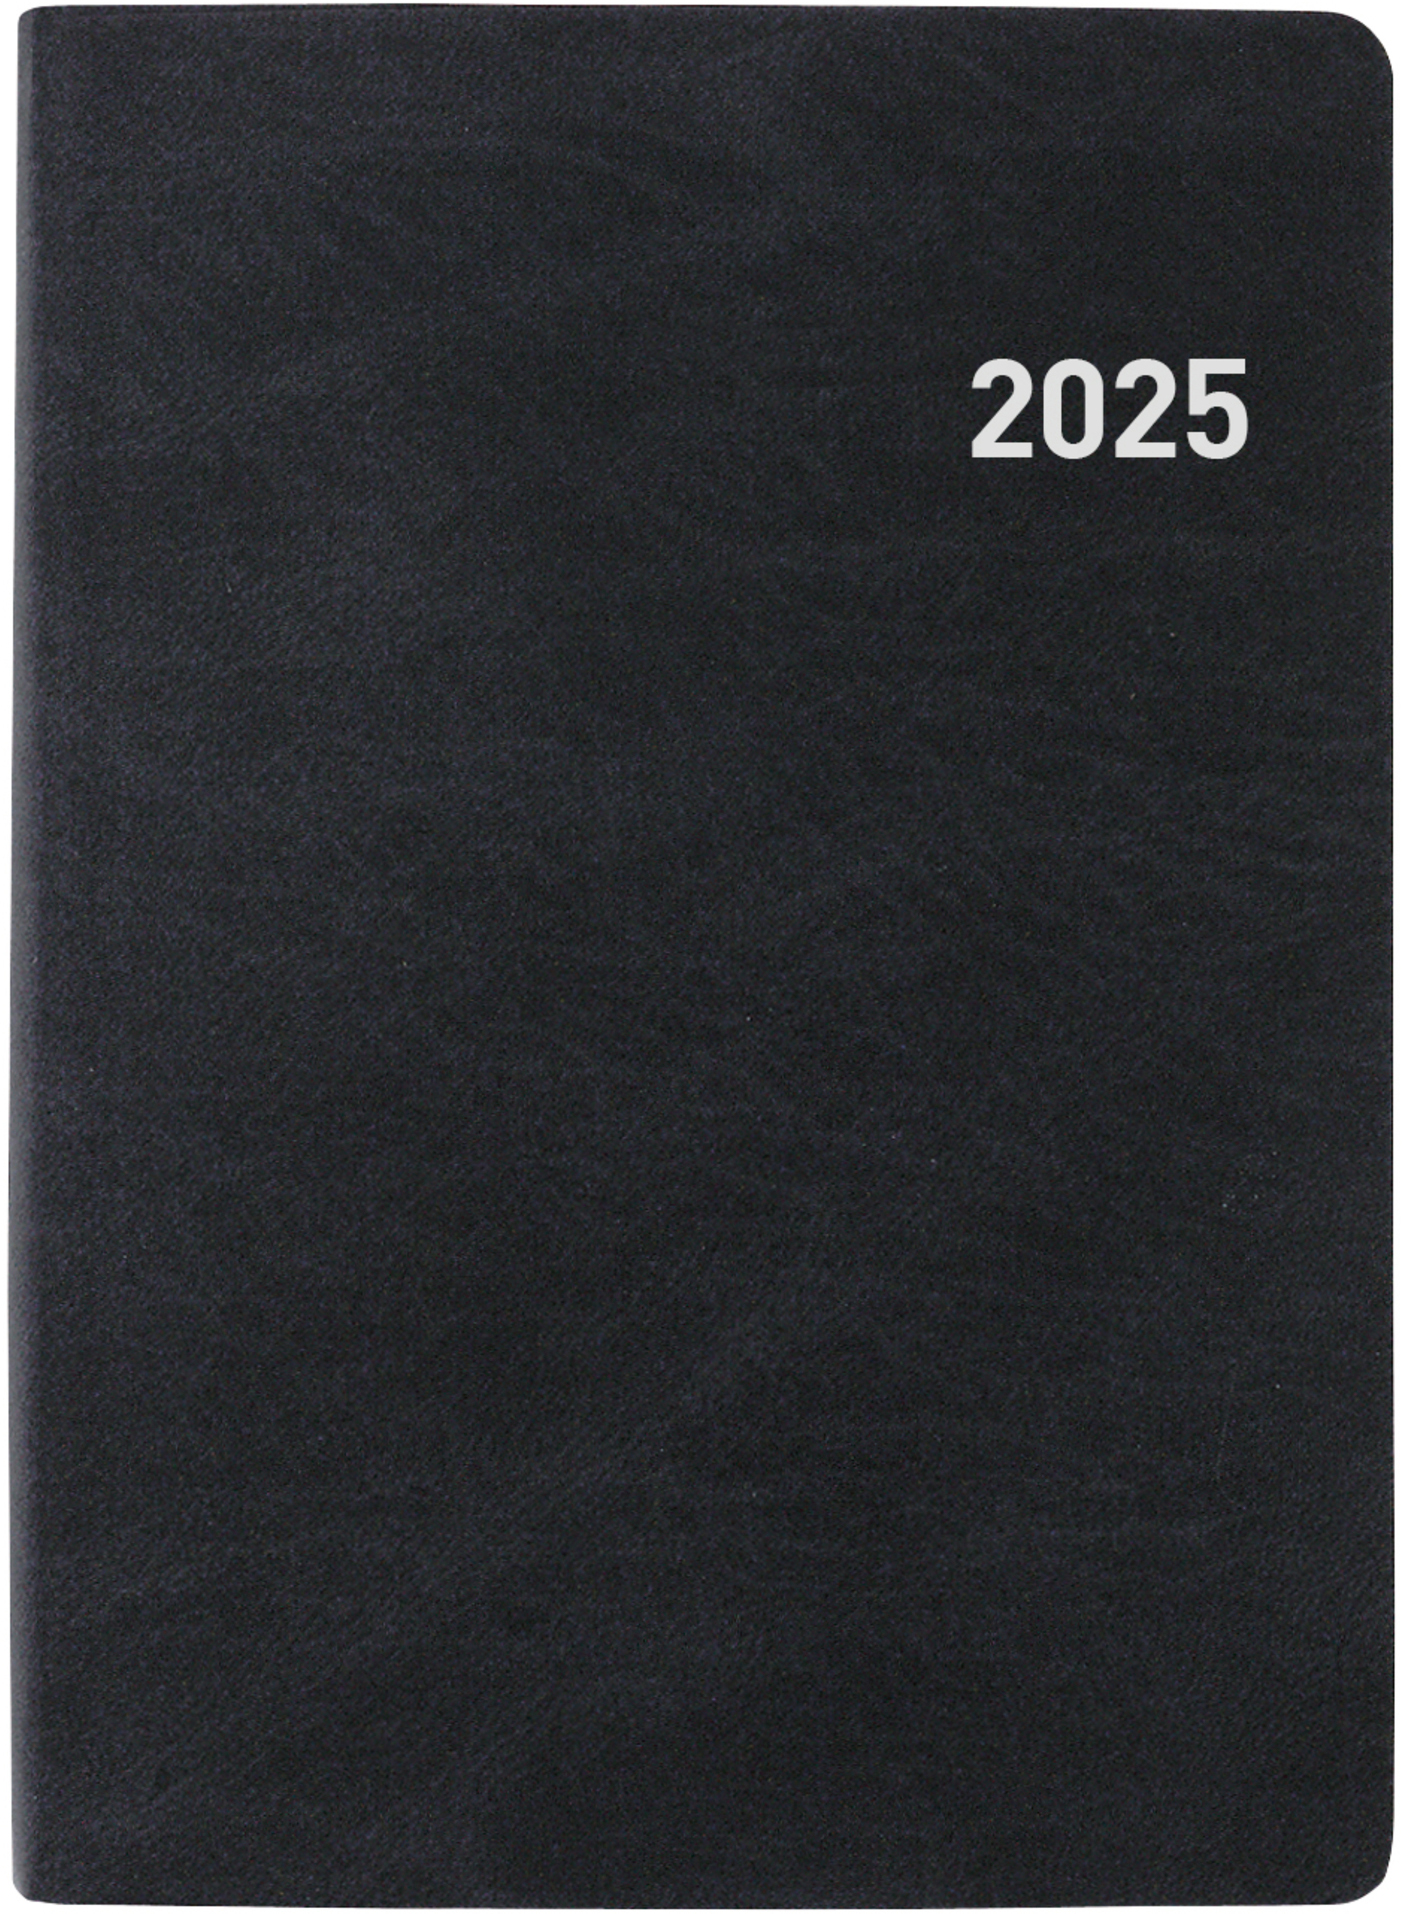 BIELLA Agenda Technikus 2025 825101020025 1J/1P noir ML 10.1x14.2cm